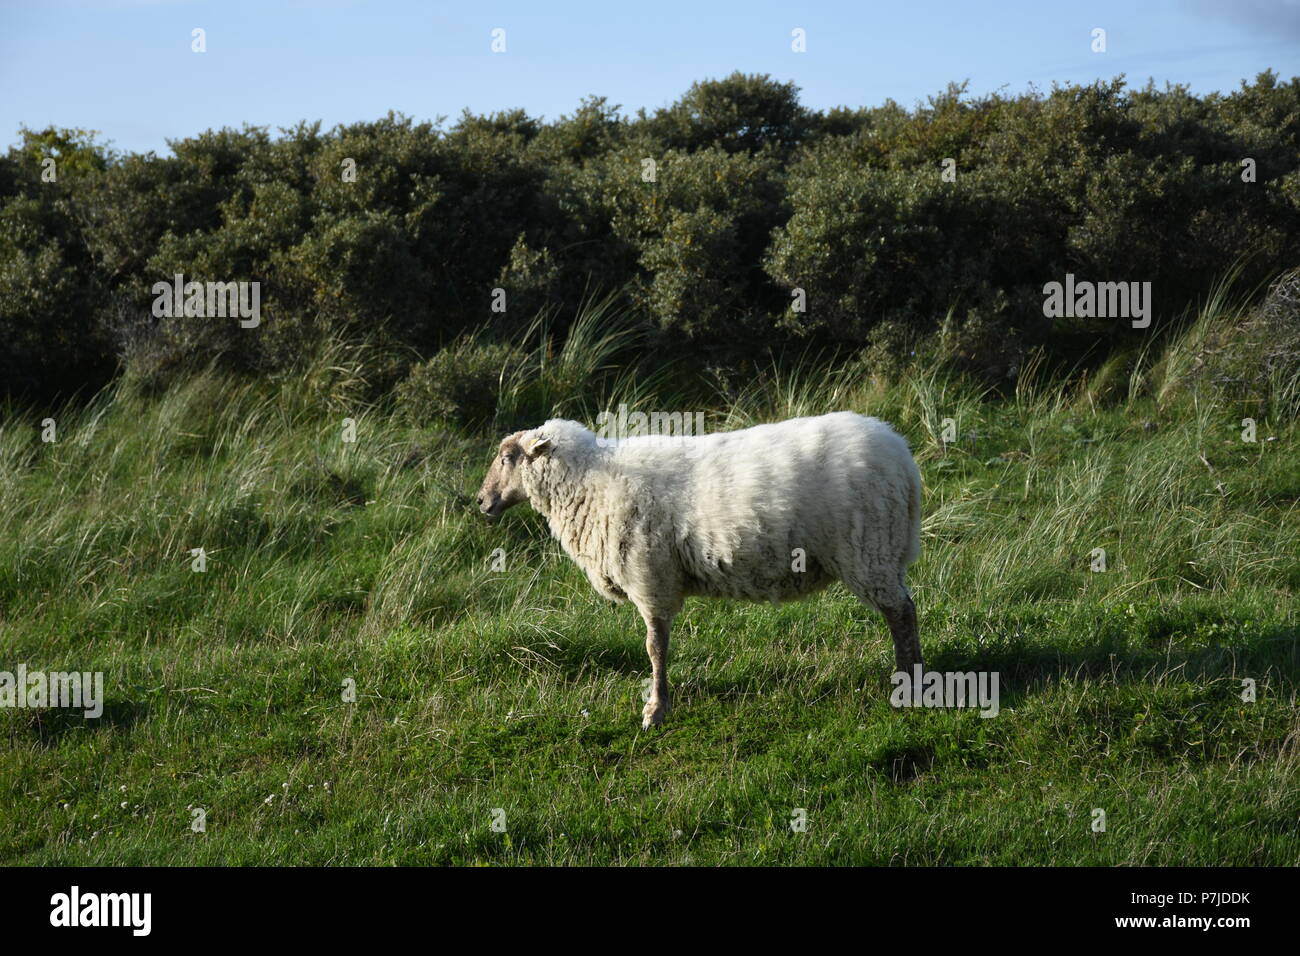 Schafe auf einer Weide Banque D'Images